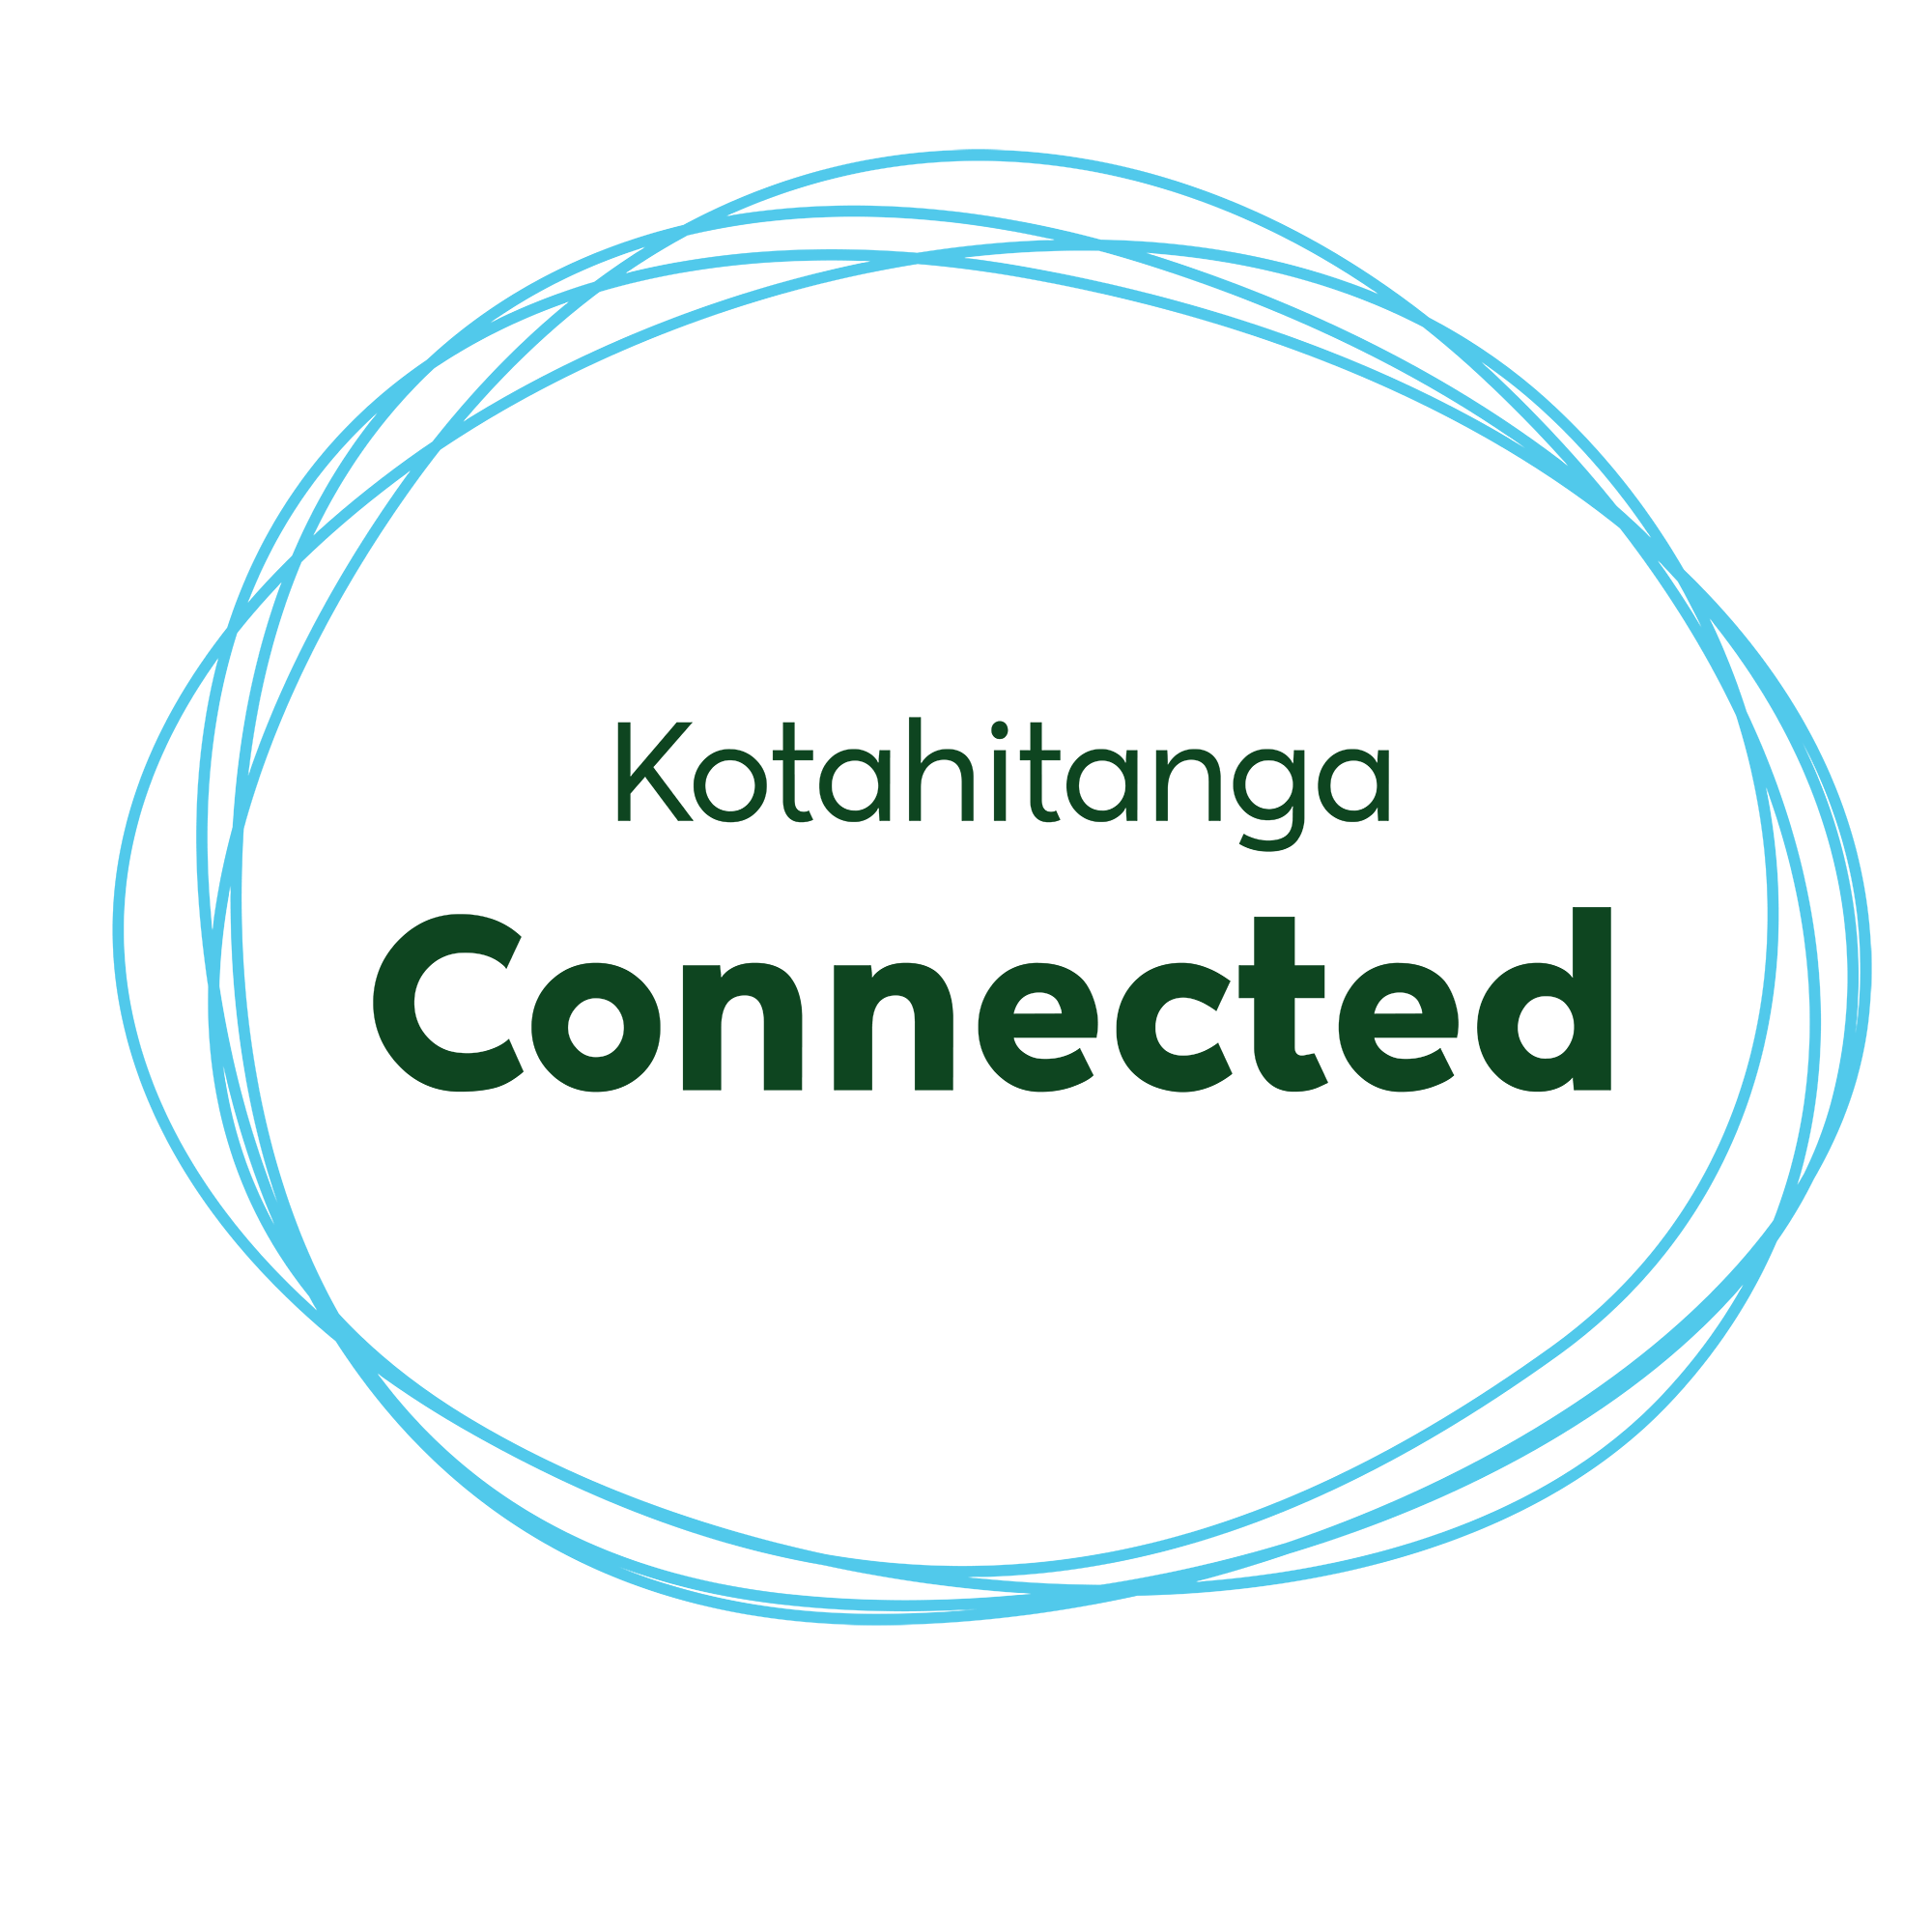 Connected - Kotahitanga